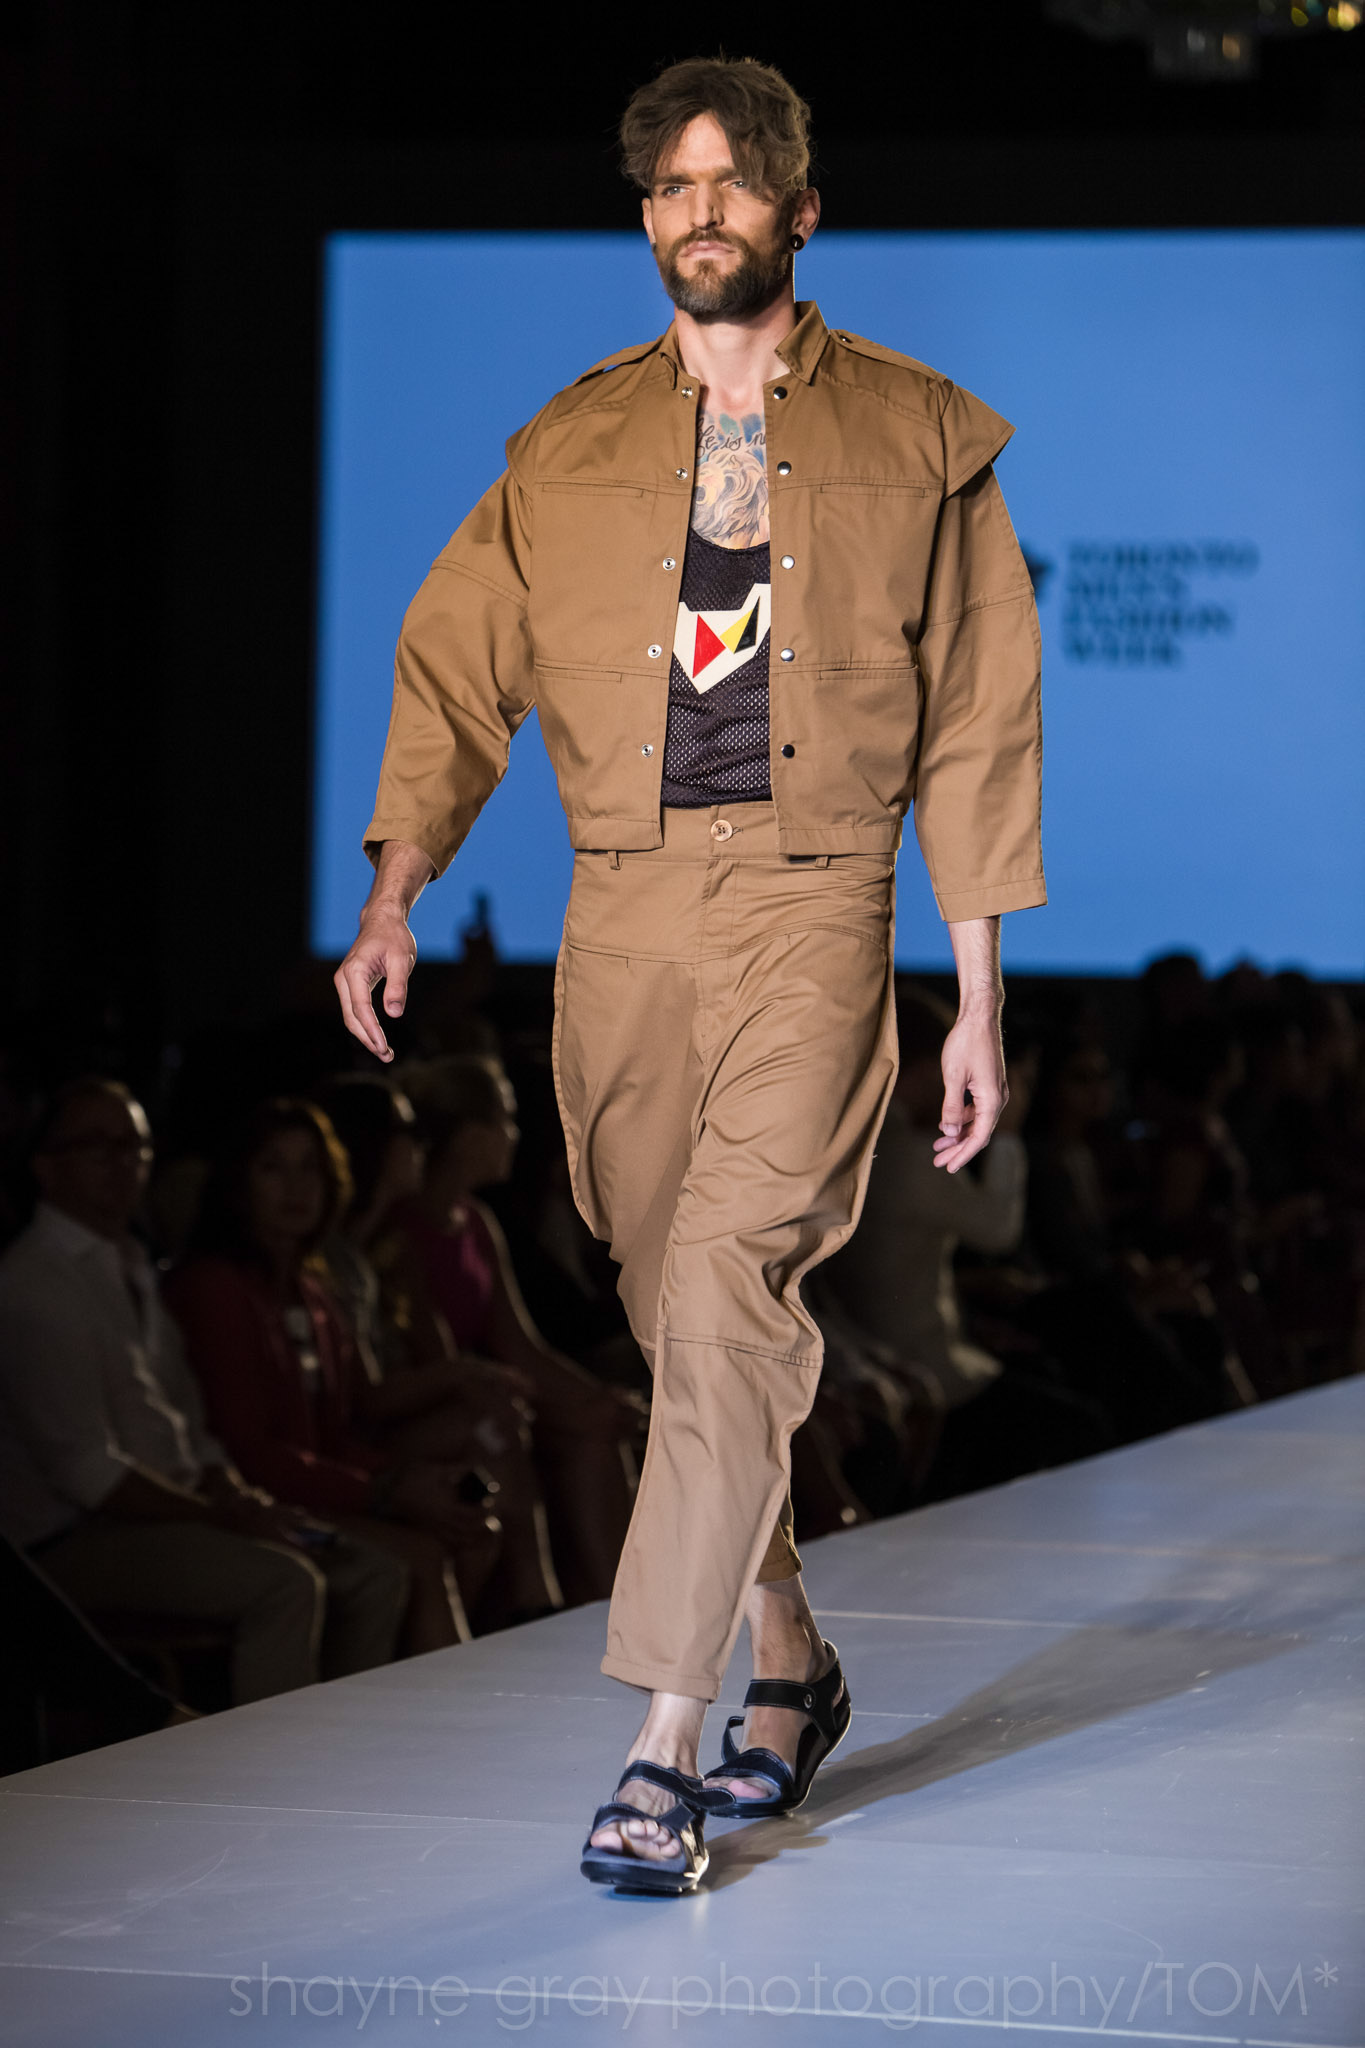 Shayne-Gray-Toronto-men's-fashion_week-TOM-jose-duran-7771.jpg